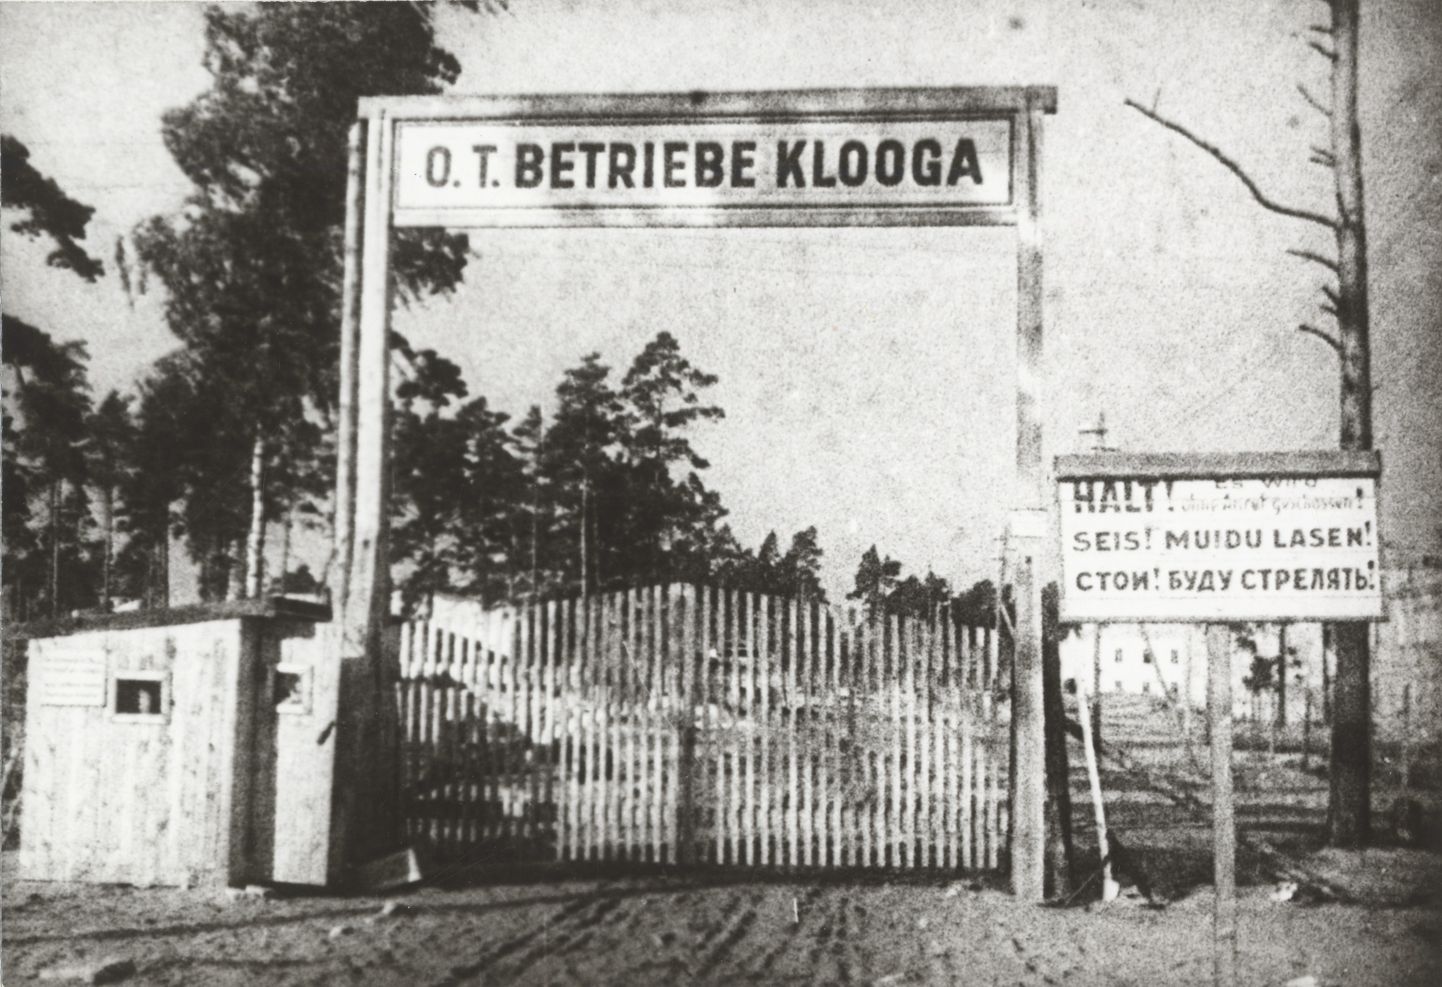 19. septembril 2019 möödus 75 aastat holokausti võikaimast sündmusest Eestis - Klooga laagris tapeti ligi kaks tuhat juuti. Fotol on Klooga laagri peavärav.